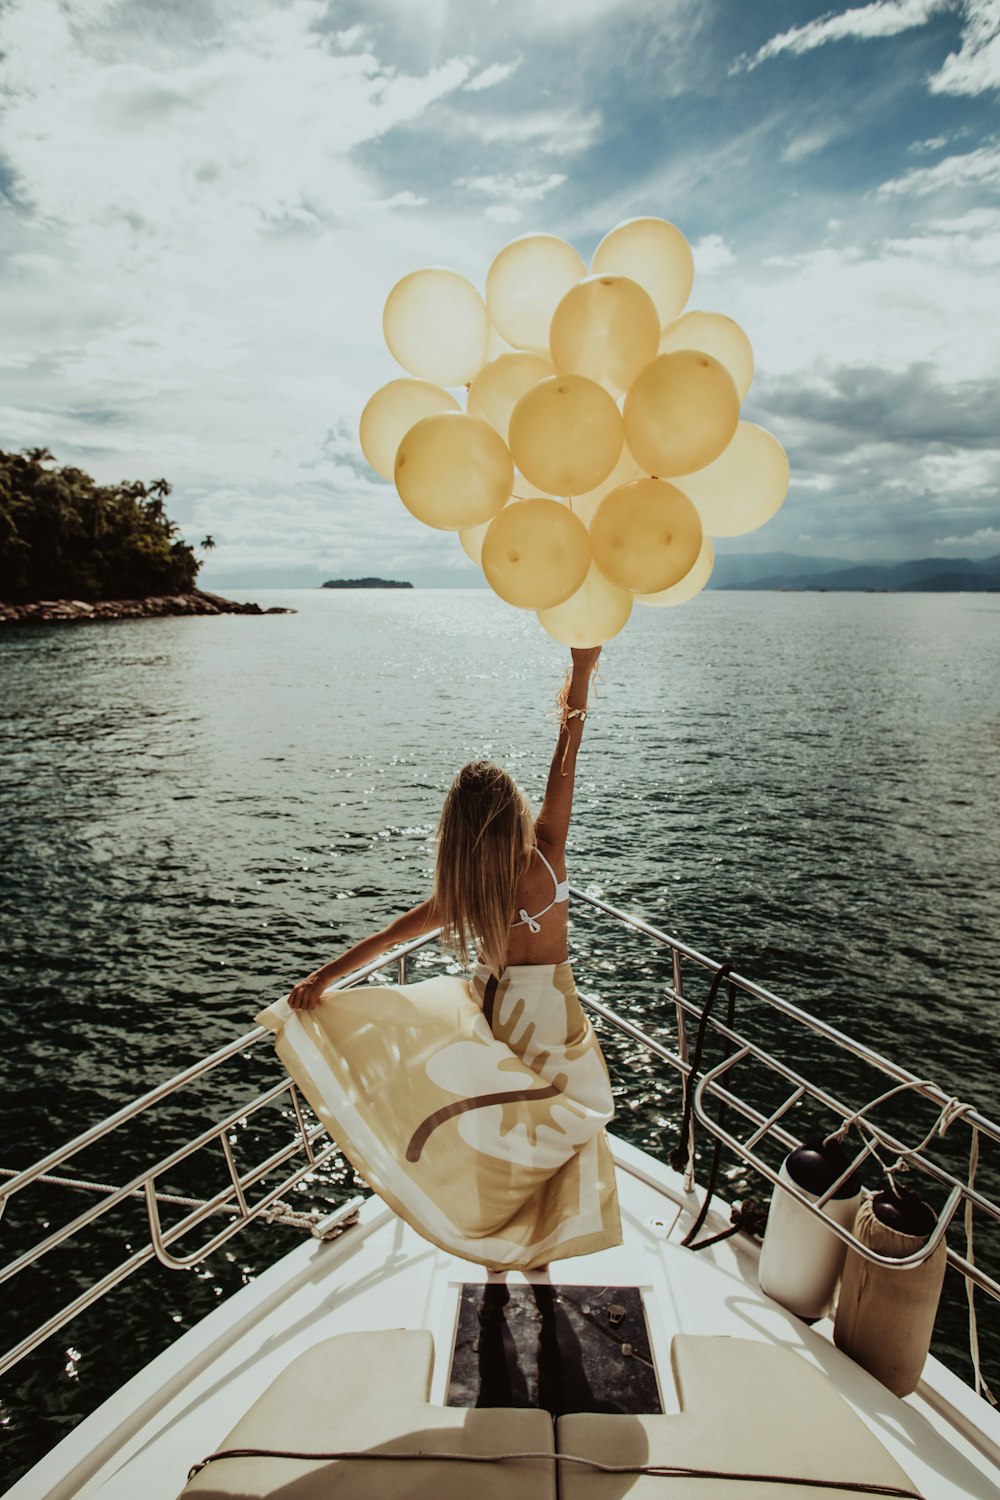 Frau hält goldene Luftballons, während sie auf einer Yacht steht